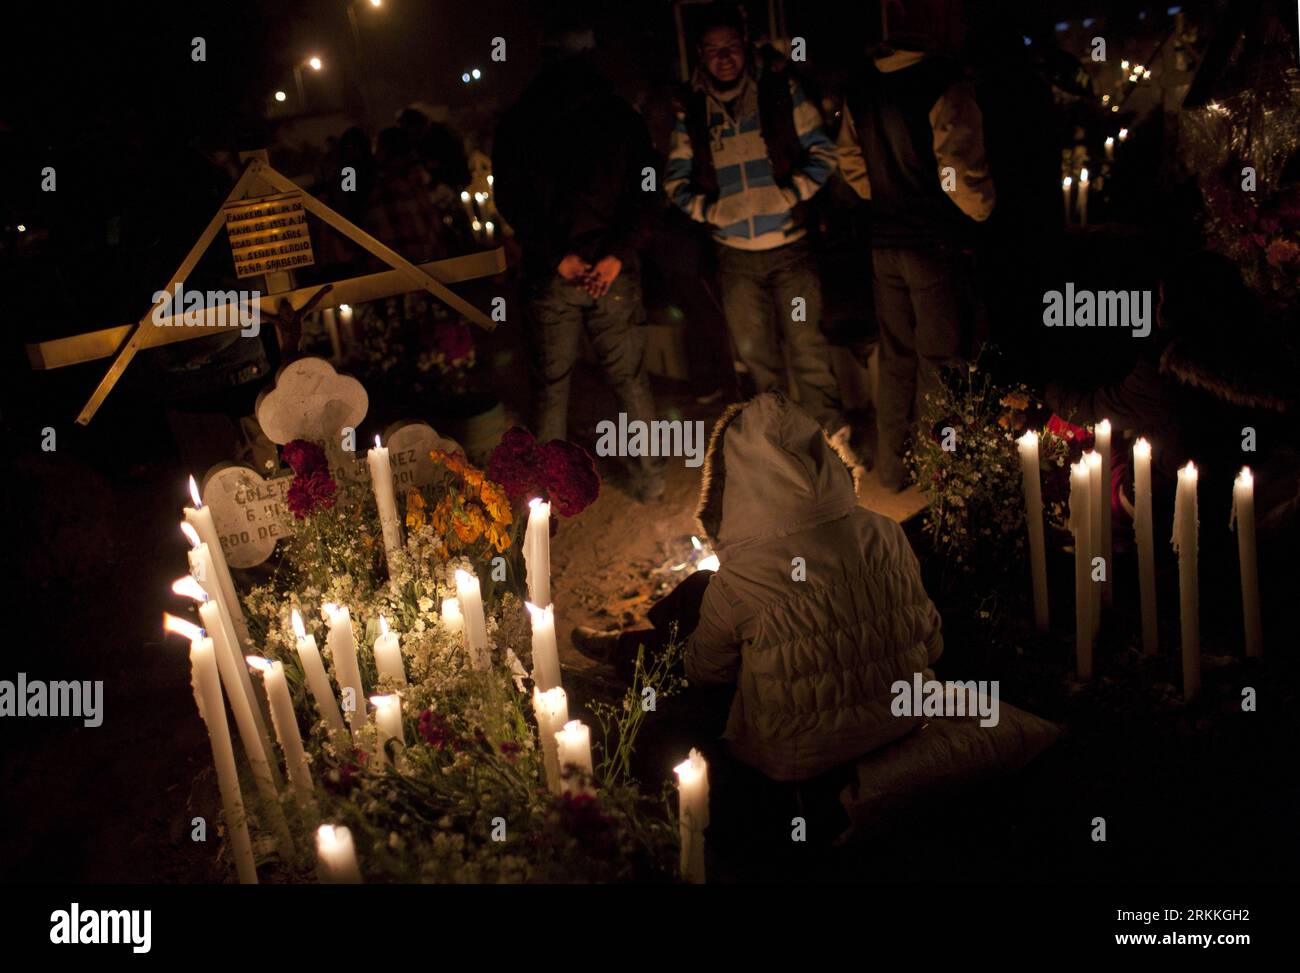 Bildnummer: 56240823 Datum: 02.11.2011 Copyright: Imago/Xinhua (111102) -- METEPEC, 2 de noviembre de 2011 (Xinhua) -- Ciudadanos asisten a la conmemoración del Día de Muertos en Metepec, México, el 2 de noviembre de 2011. Durante el Día de los Muertos que cae el 1 de noviembre y el 2 de noviembre cada año, los ciudadanos van a cementerios y decoran tumbas con flores, velas y cruces, así como tocan música toda la noche en memoria de sus seres queridos. (Xinhua/Shi Sisi) (zys) MEXICO-METEPEC-DÍA DE LOS MUERTOS PUBLICATIONxNOTxINxCHN Gesellschaft Gedenken Tag der Toten x0x xsk 2011 quer 56240823 Fecha 02 11 2011 Copyright Imago XINHUA N Foto de stock